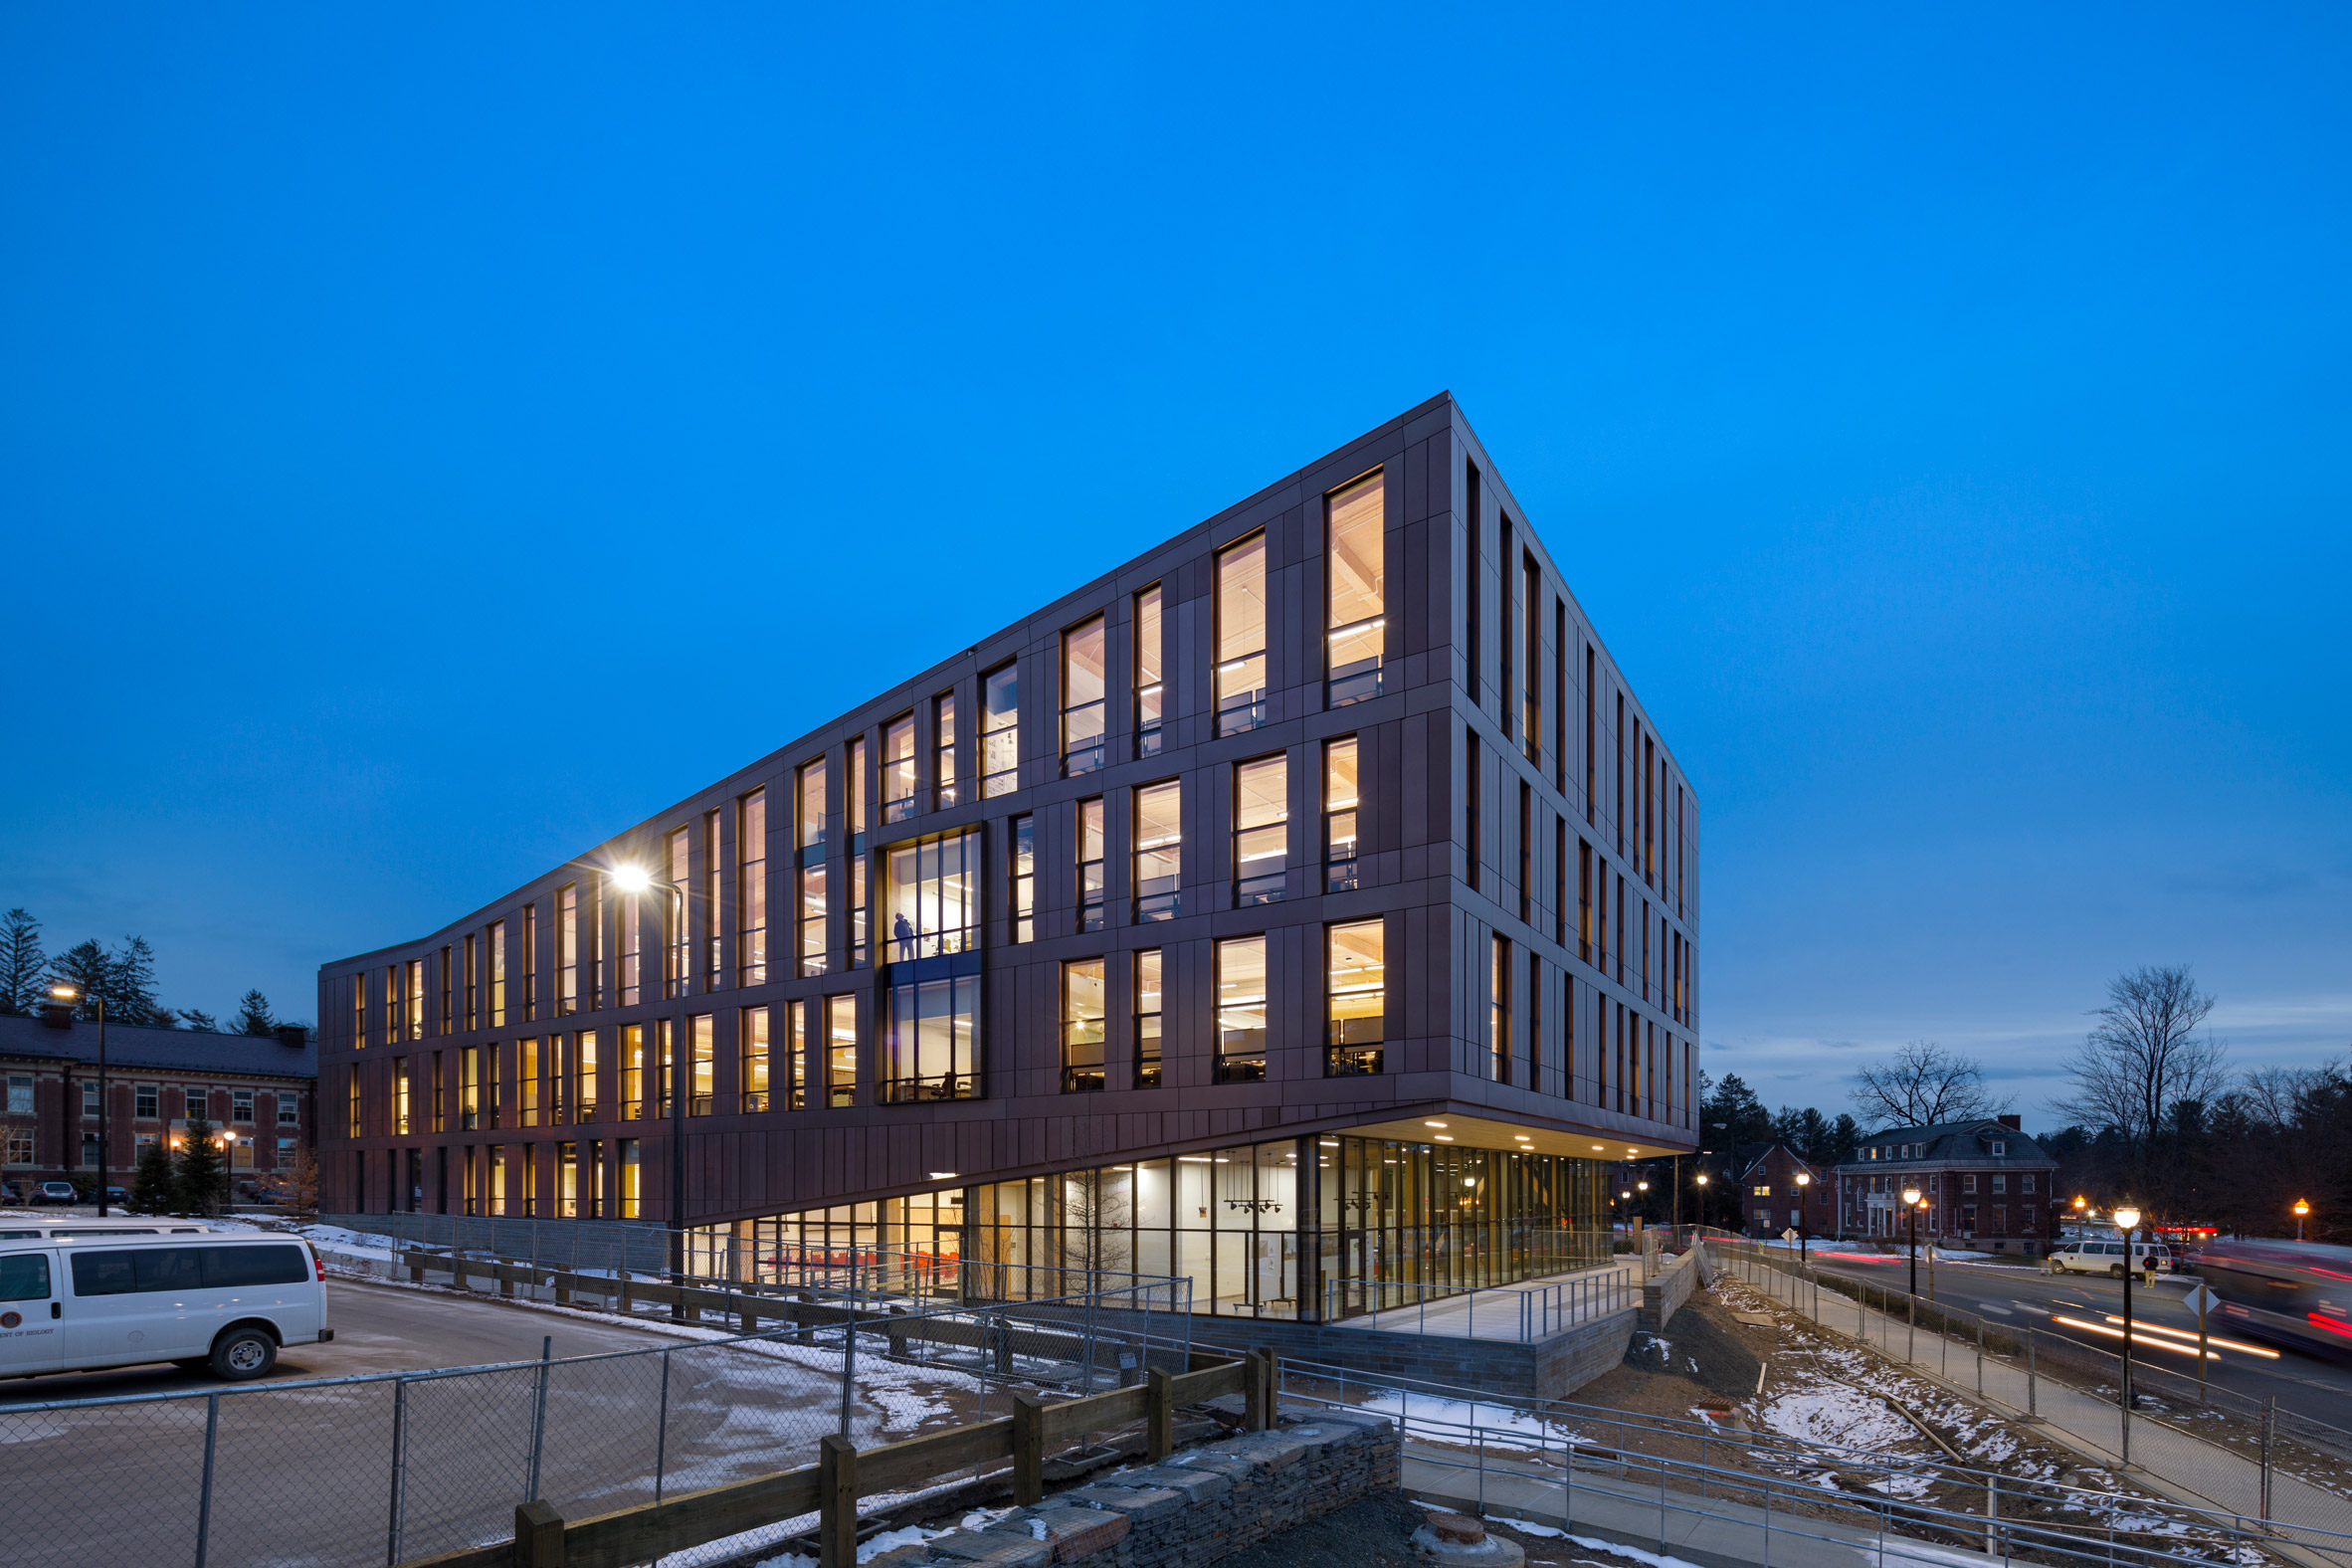 The University of Massachusetts Amherst's design school by Leers Weinzapfel Associates